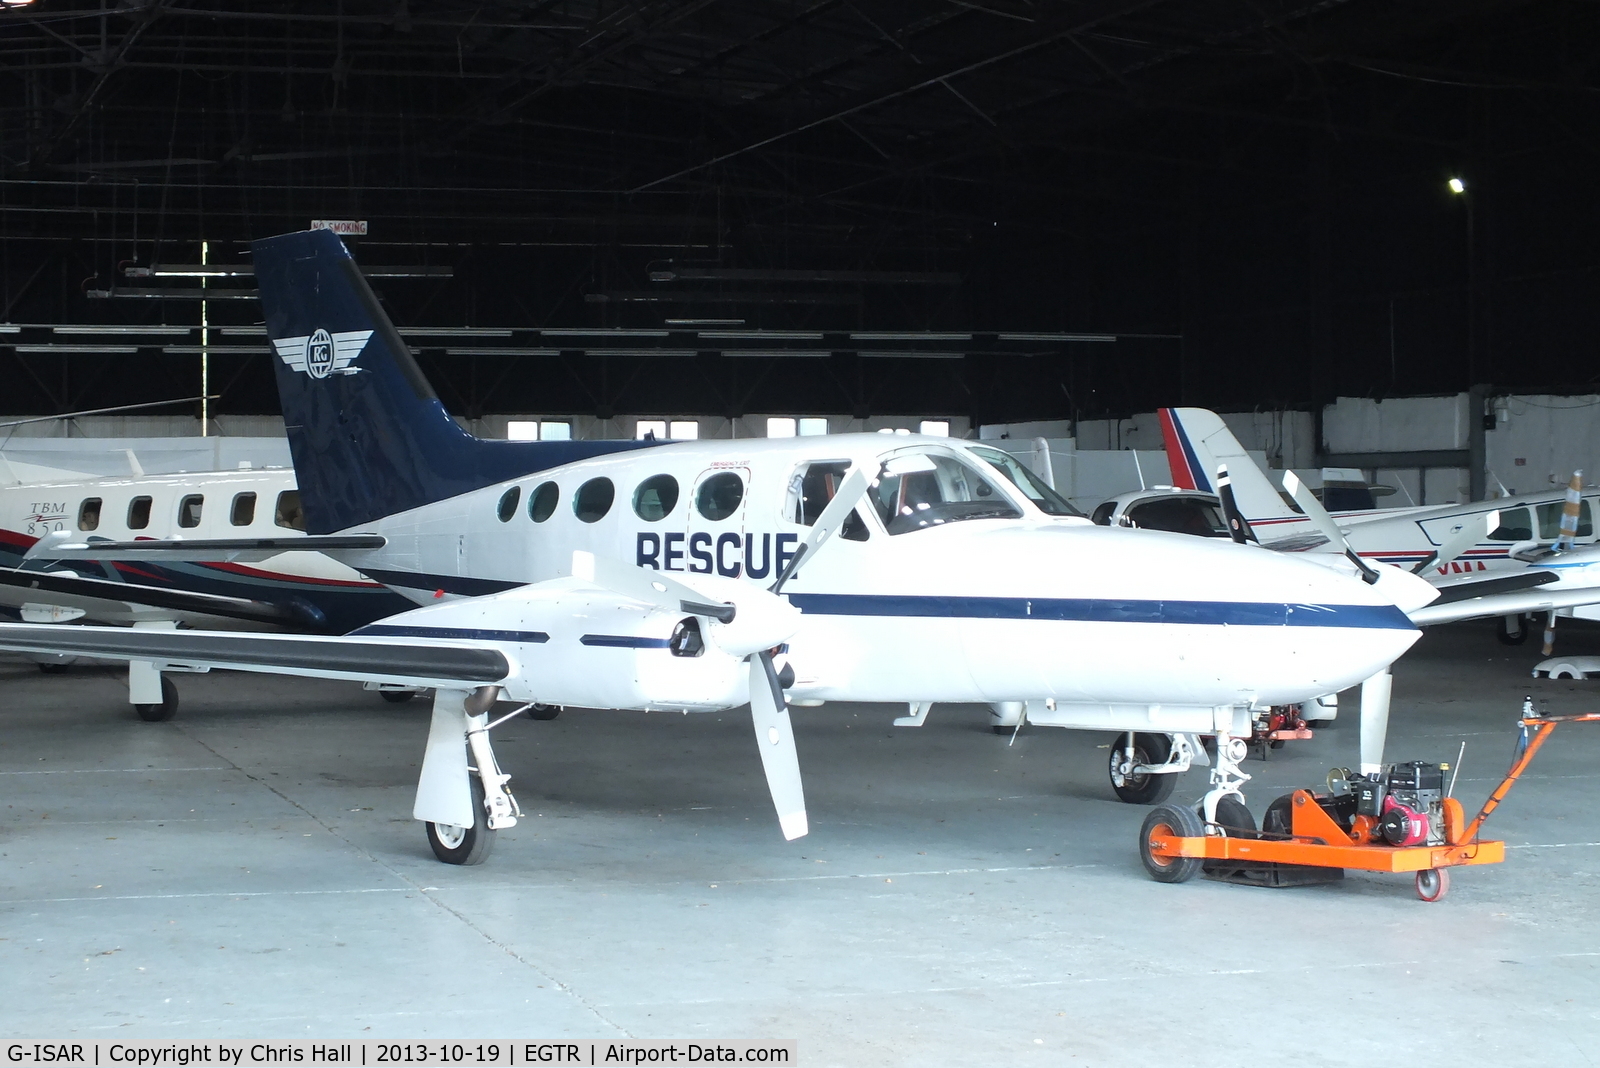 G-ISAR, 1980 Cessna 421C Golden Eagle C/N 421C-0848, Rescue Global Management Services Ltd